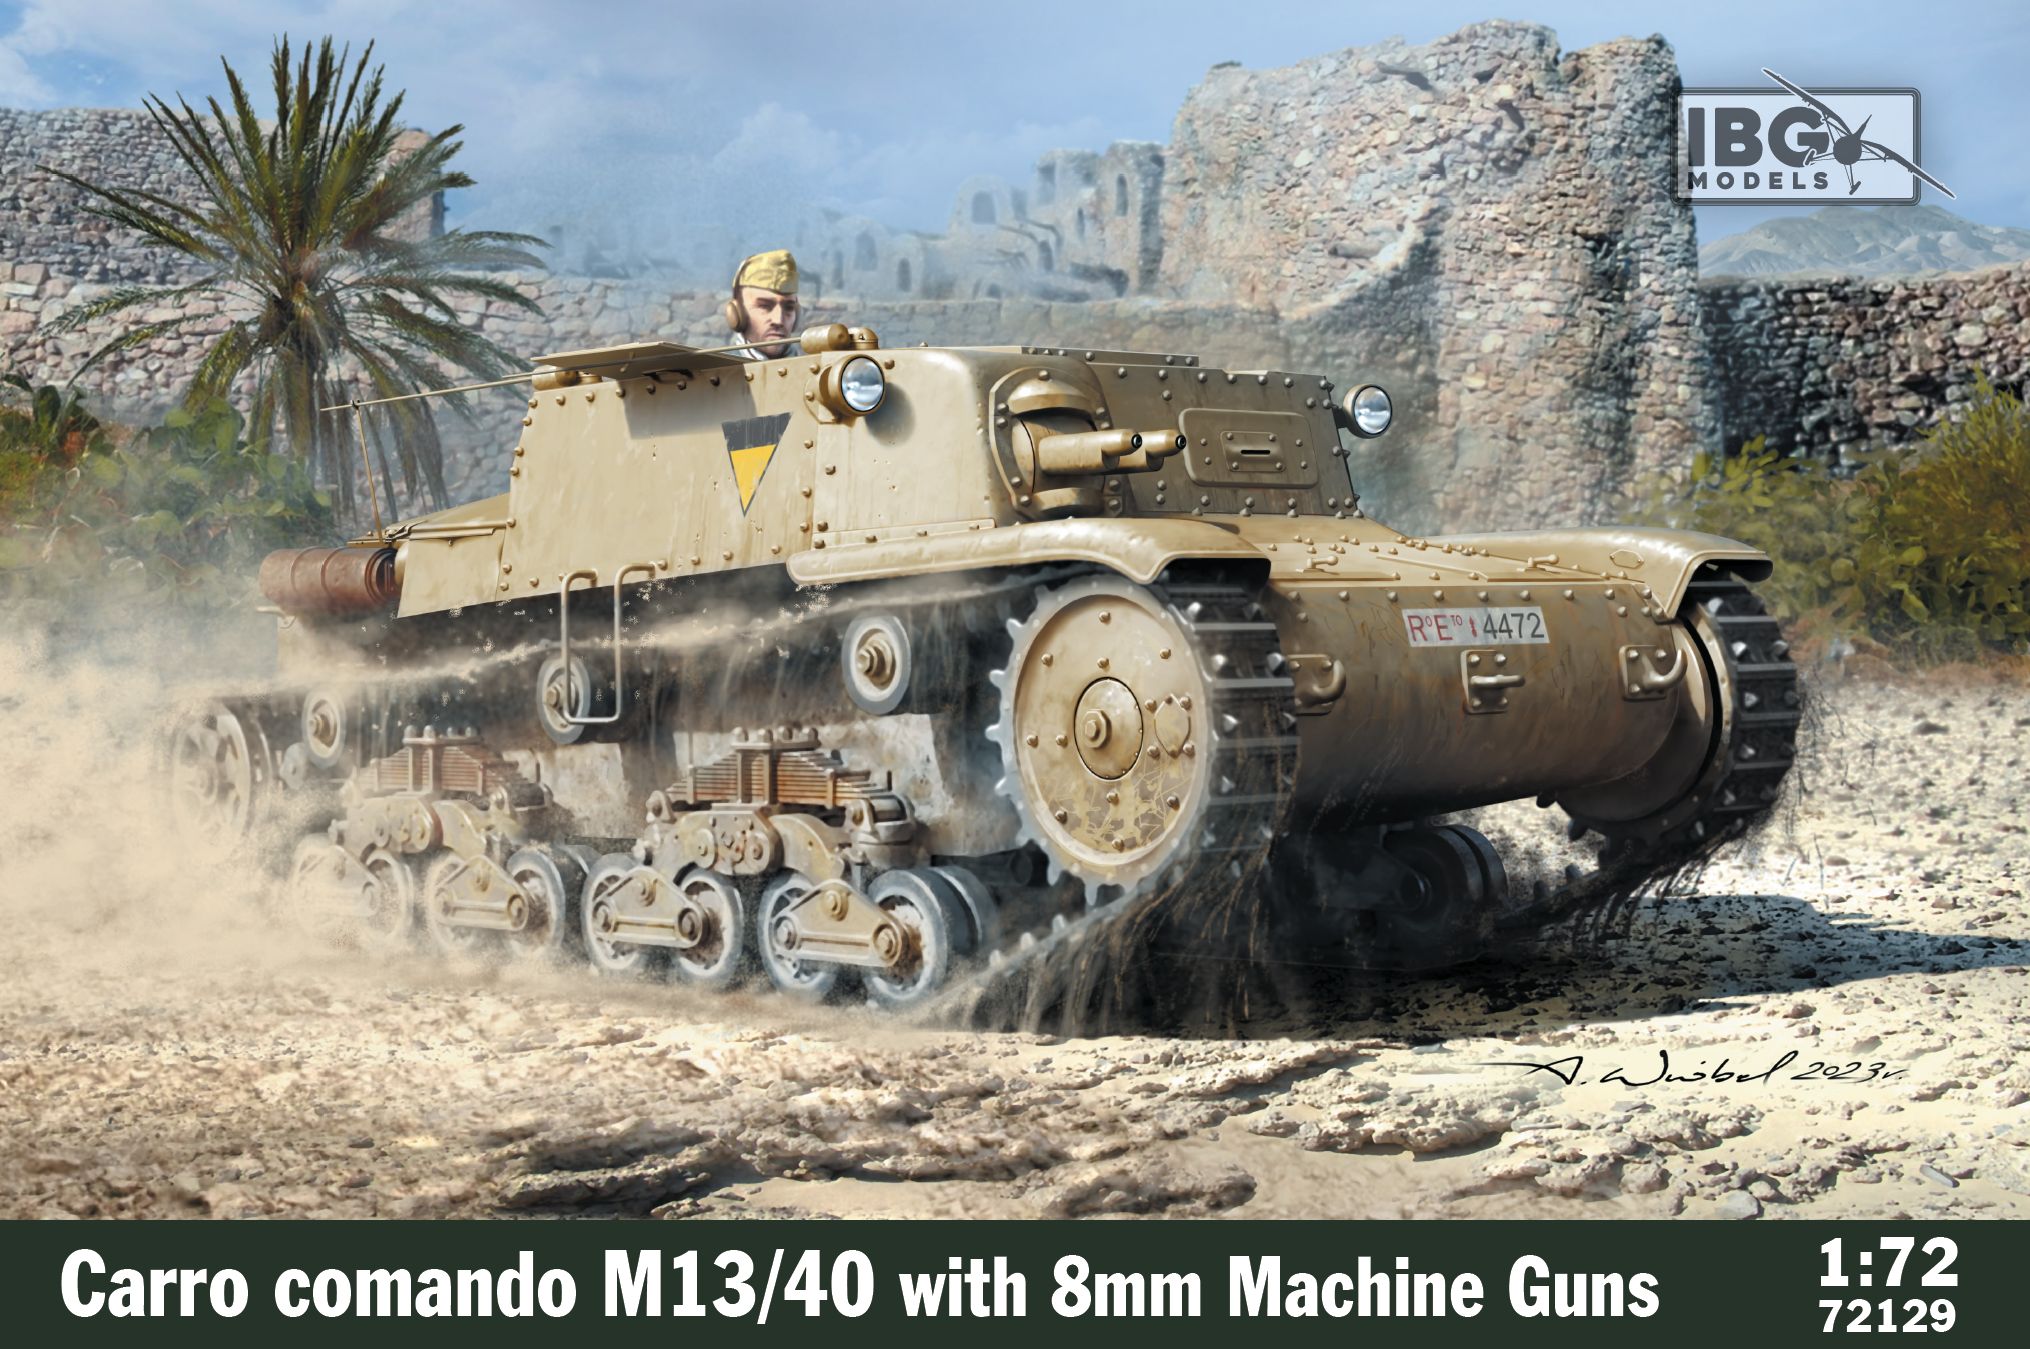 M14/41 Carro Commando with 8mm guns